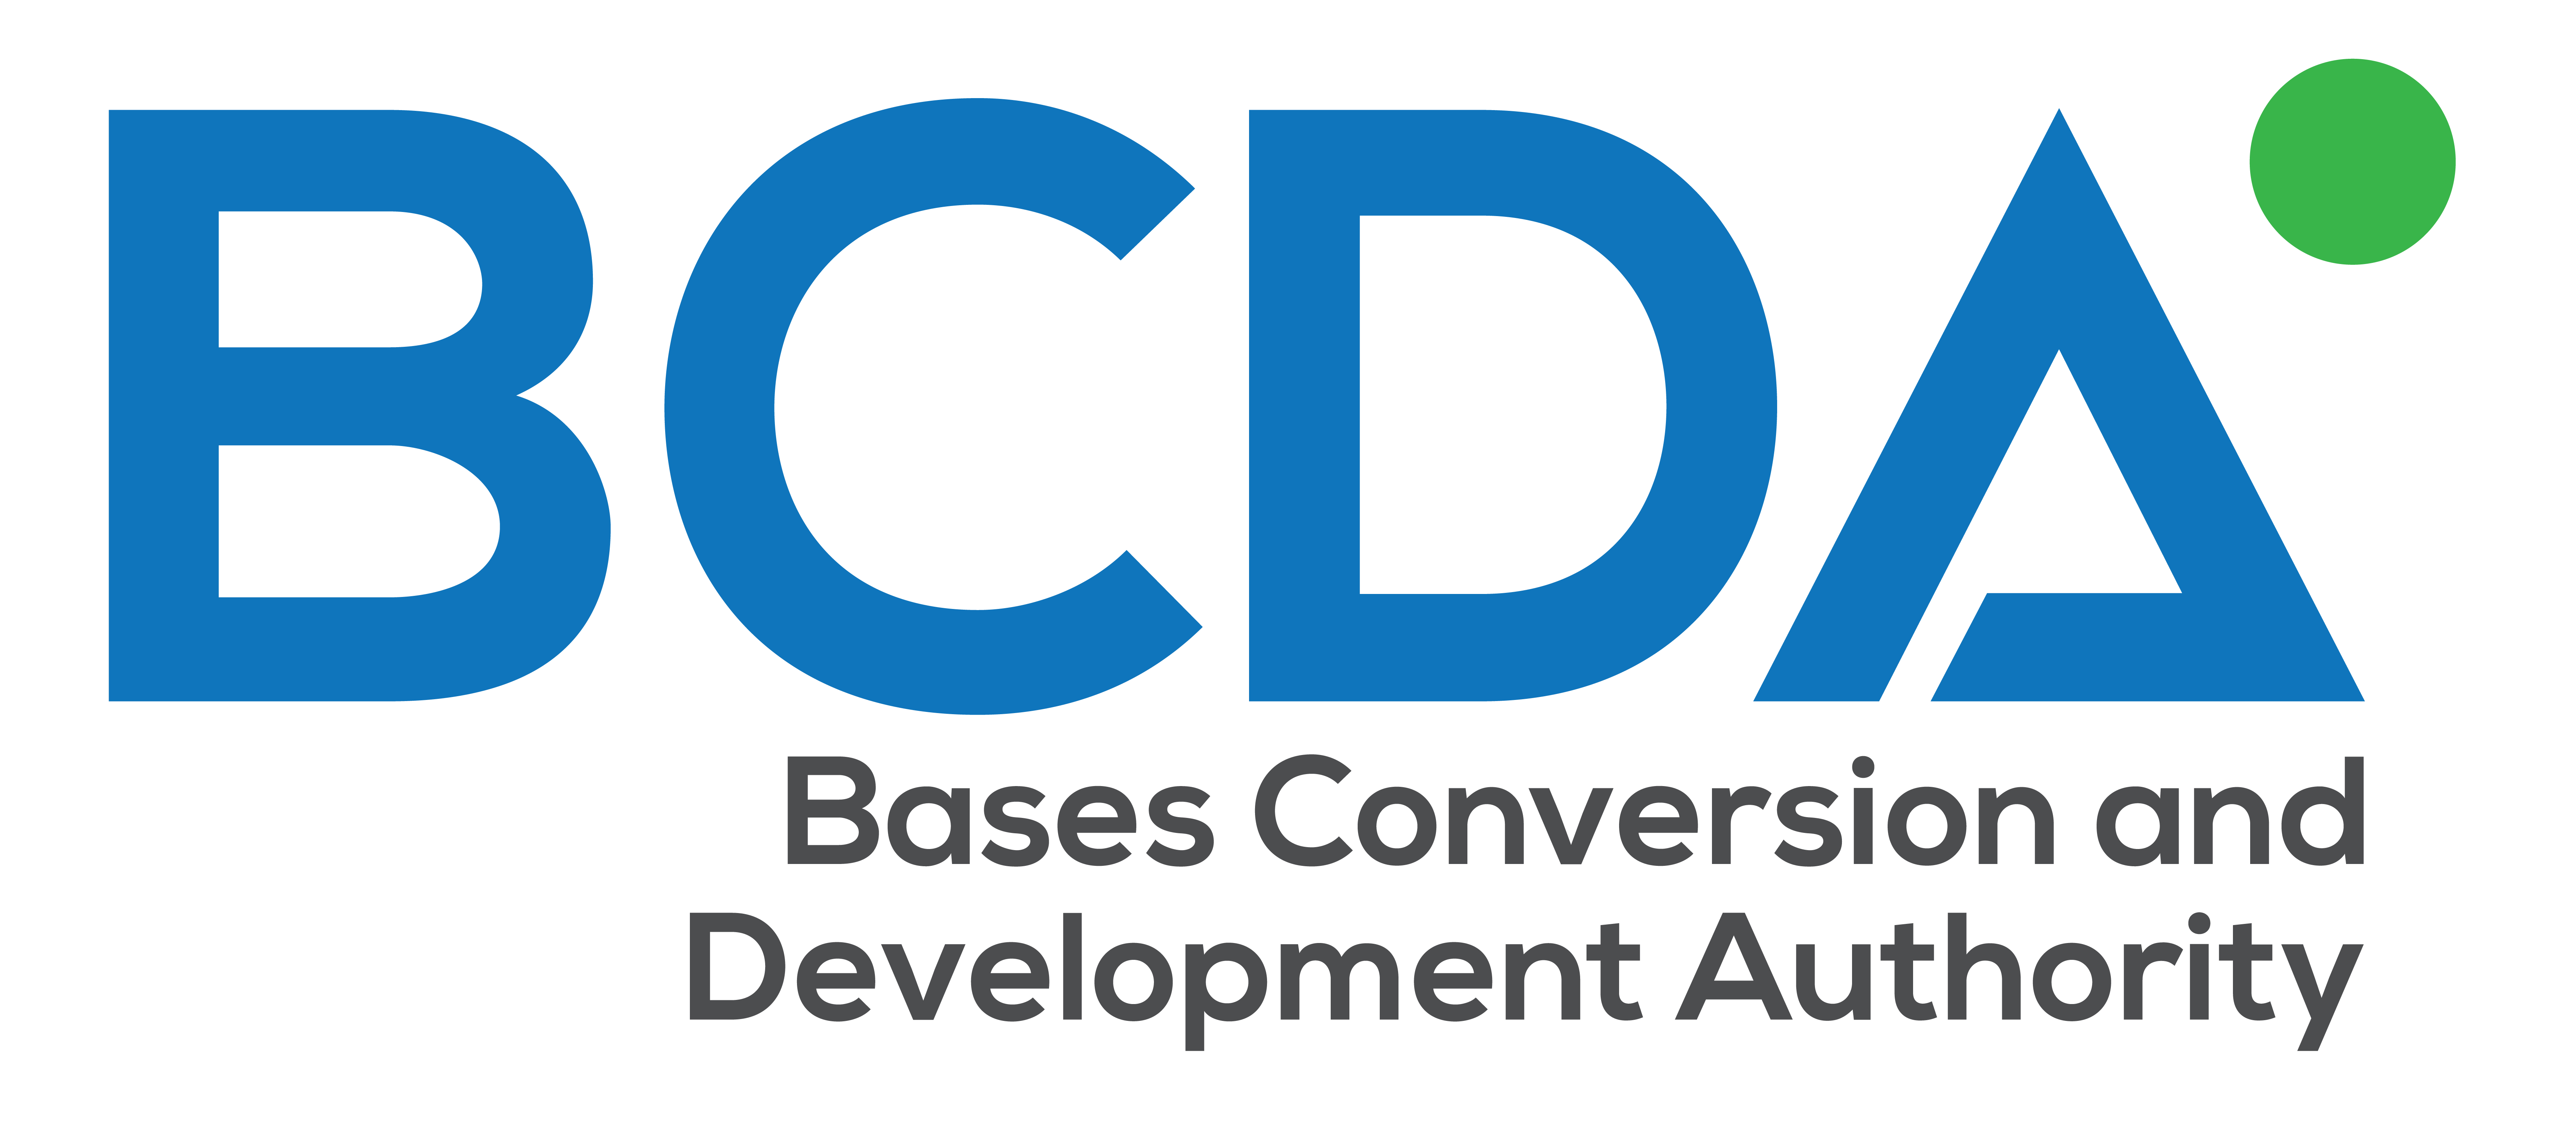 BCDA logo (full color)